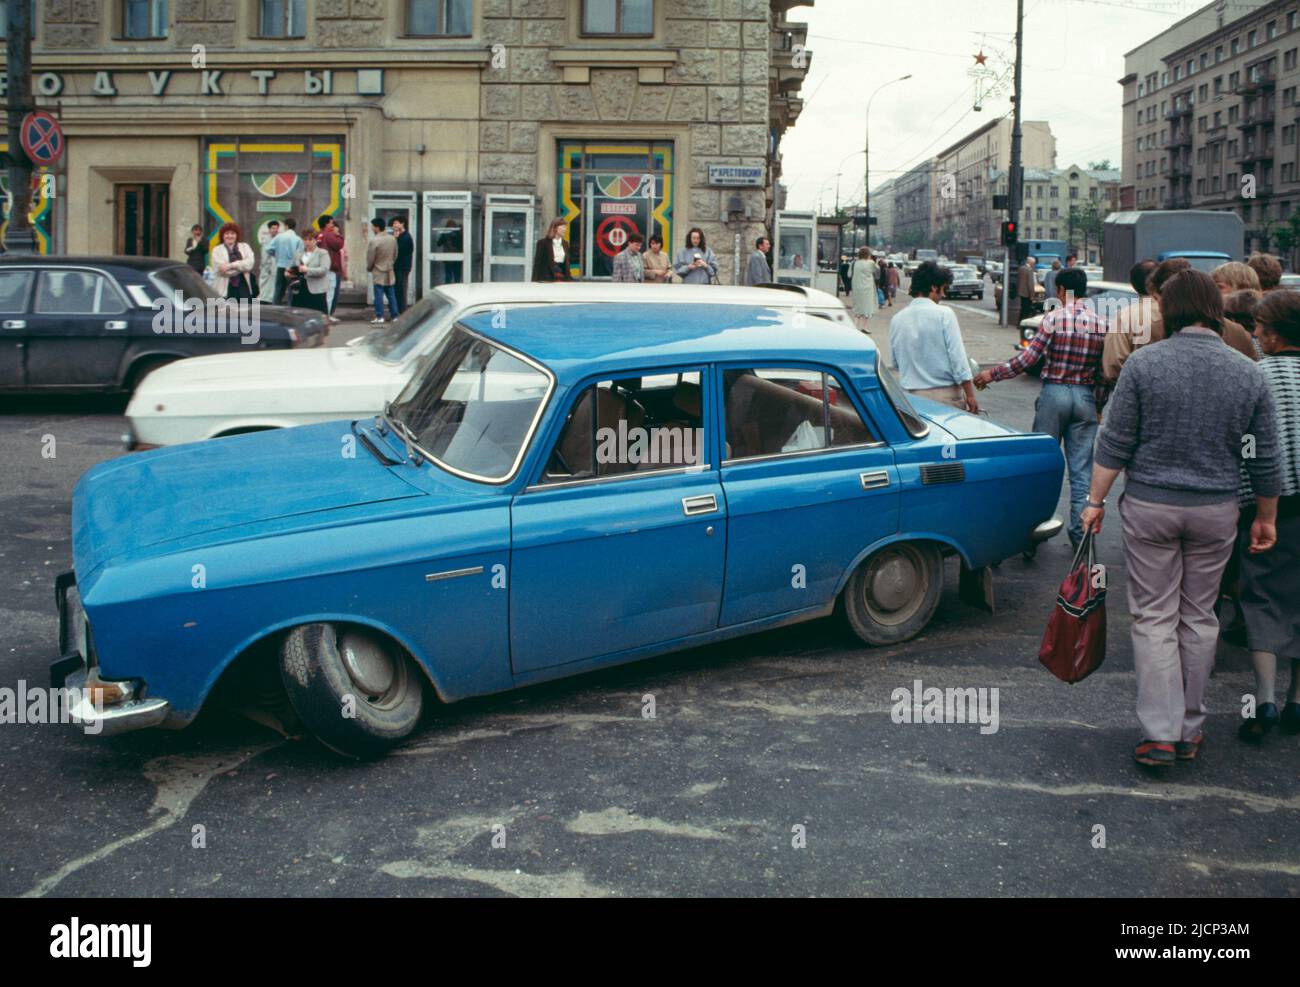 En 1991, en el norte de Moscú, meses antes del final de la Unión Soviética, Moskvitch, un automóvil ruso, salió de Krestovskiy Pereulok y Prospect Mira. Foto de stock